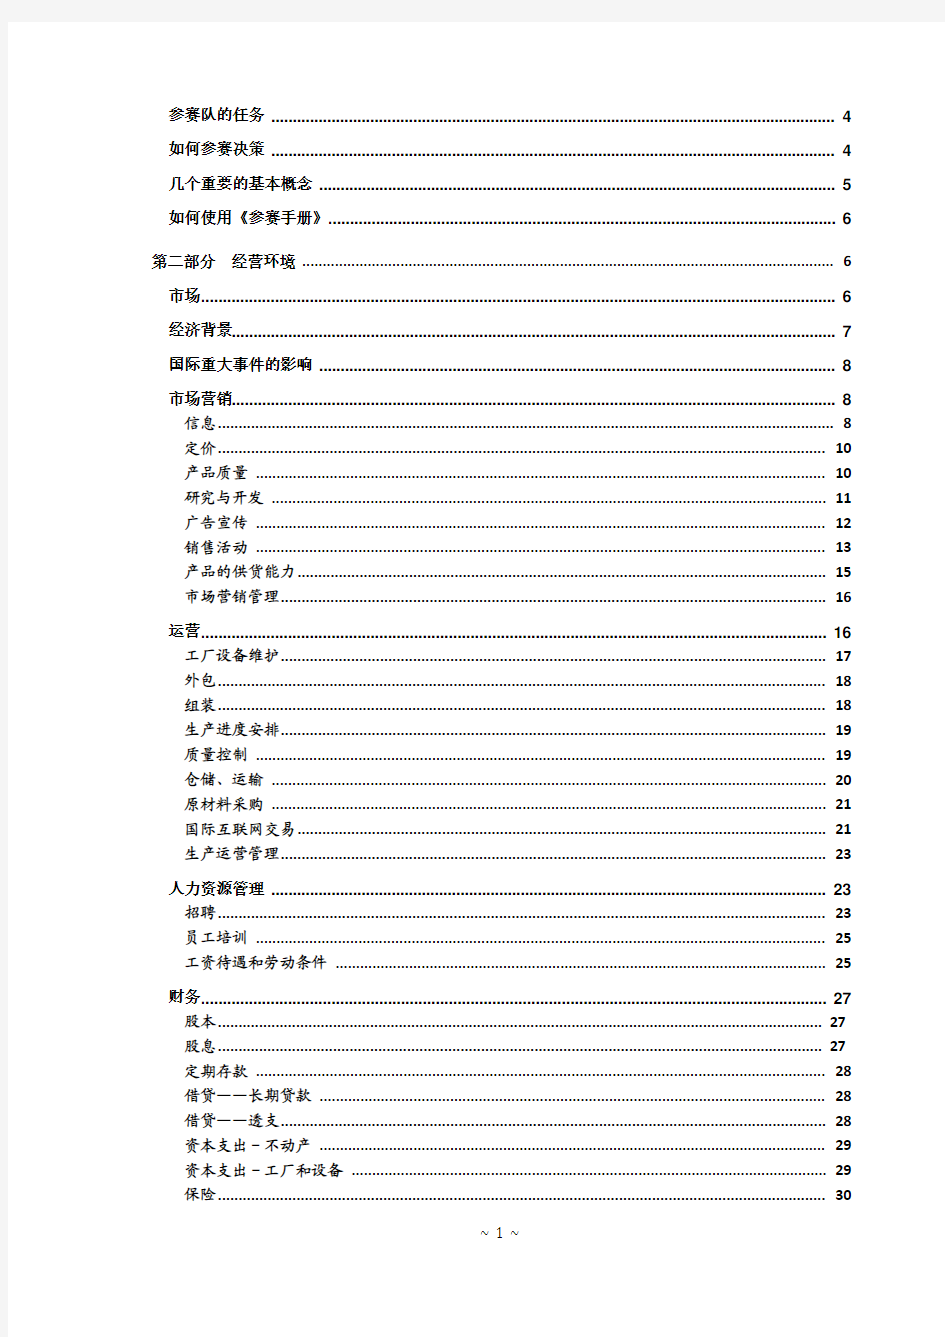 手册大全--国际企业管理挑战赛参赛手册(中文版)